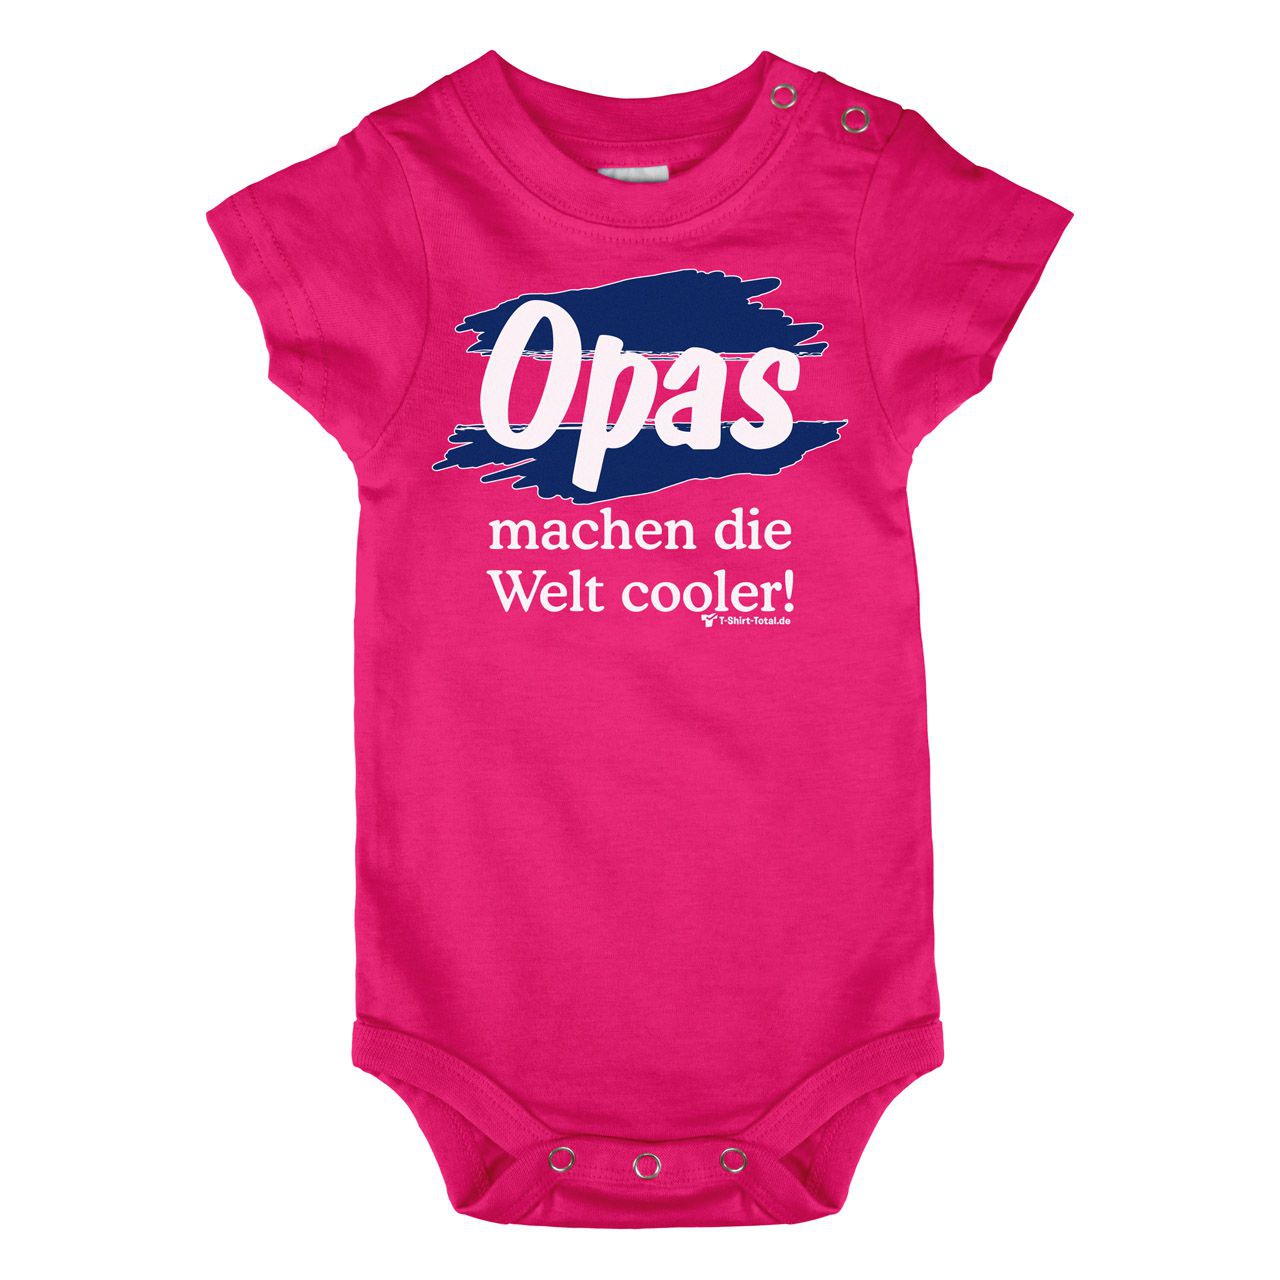 Welt cooler Opa Baby Body Kurzarm pink 56 / 62